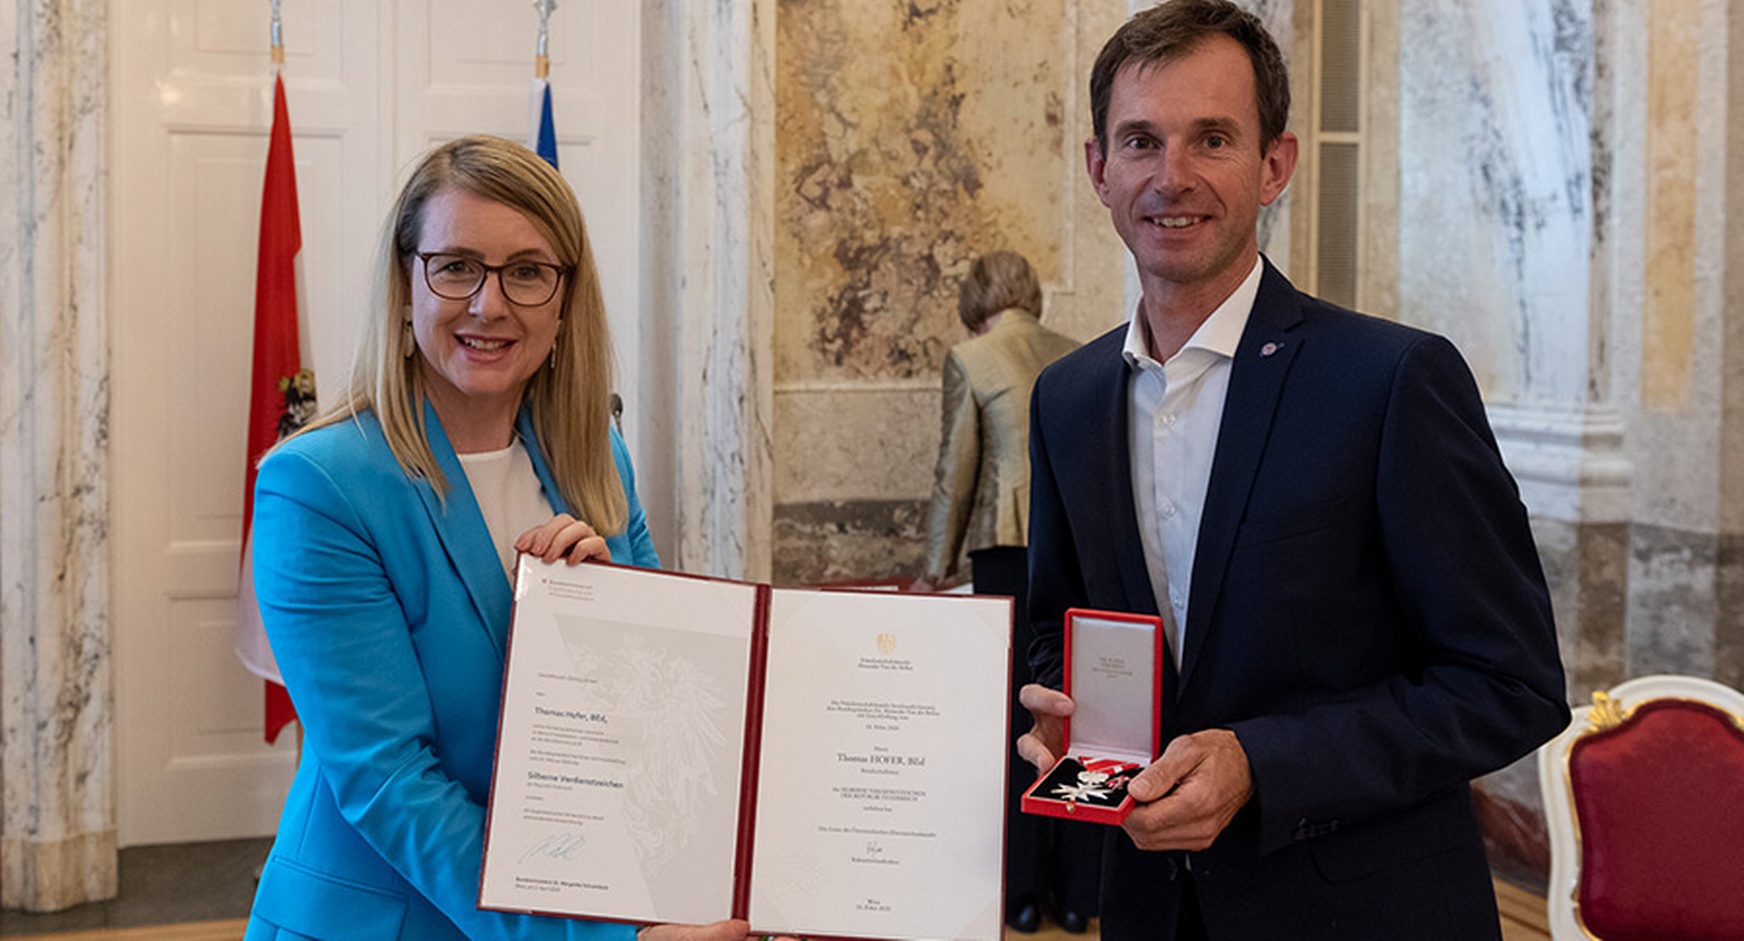 Silbernes Verdienstzeichen für SkillsAustria-Experte Thomas Hofer